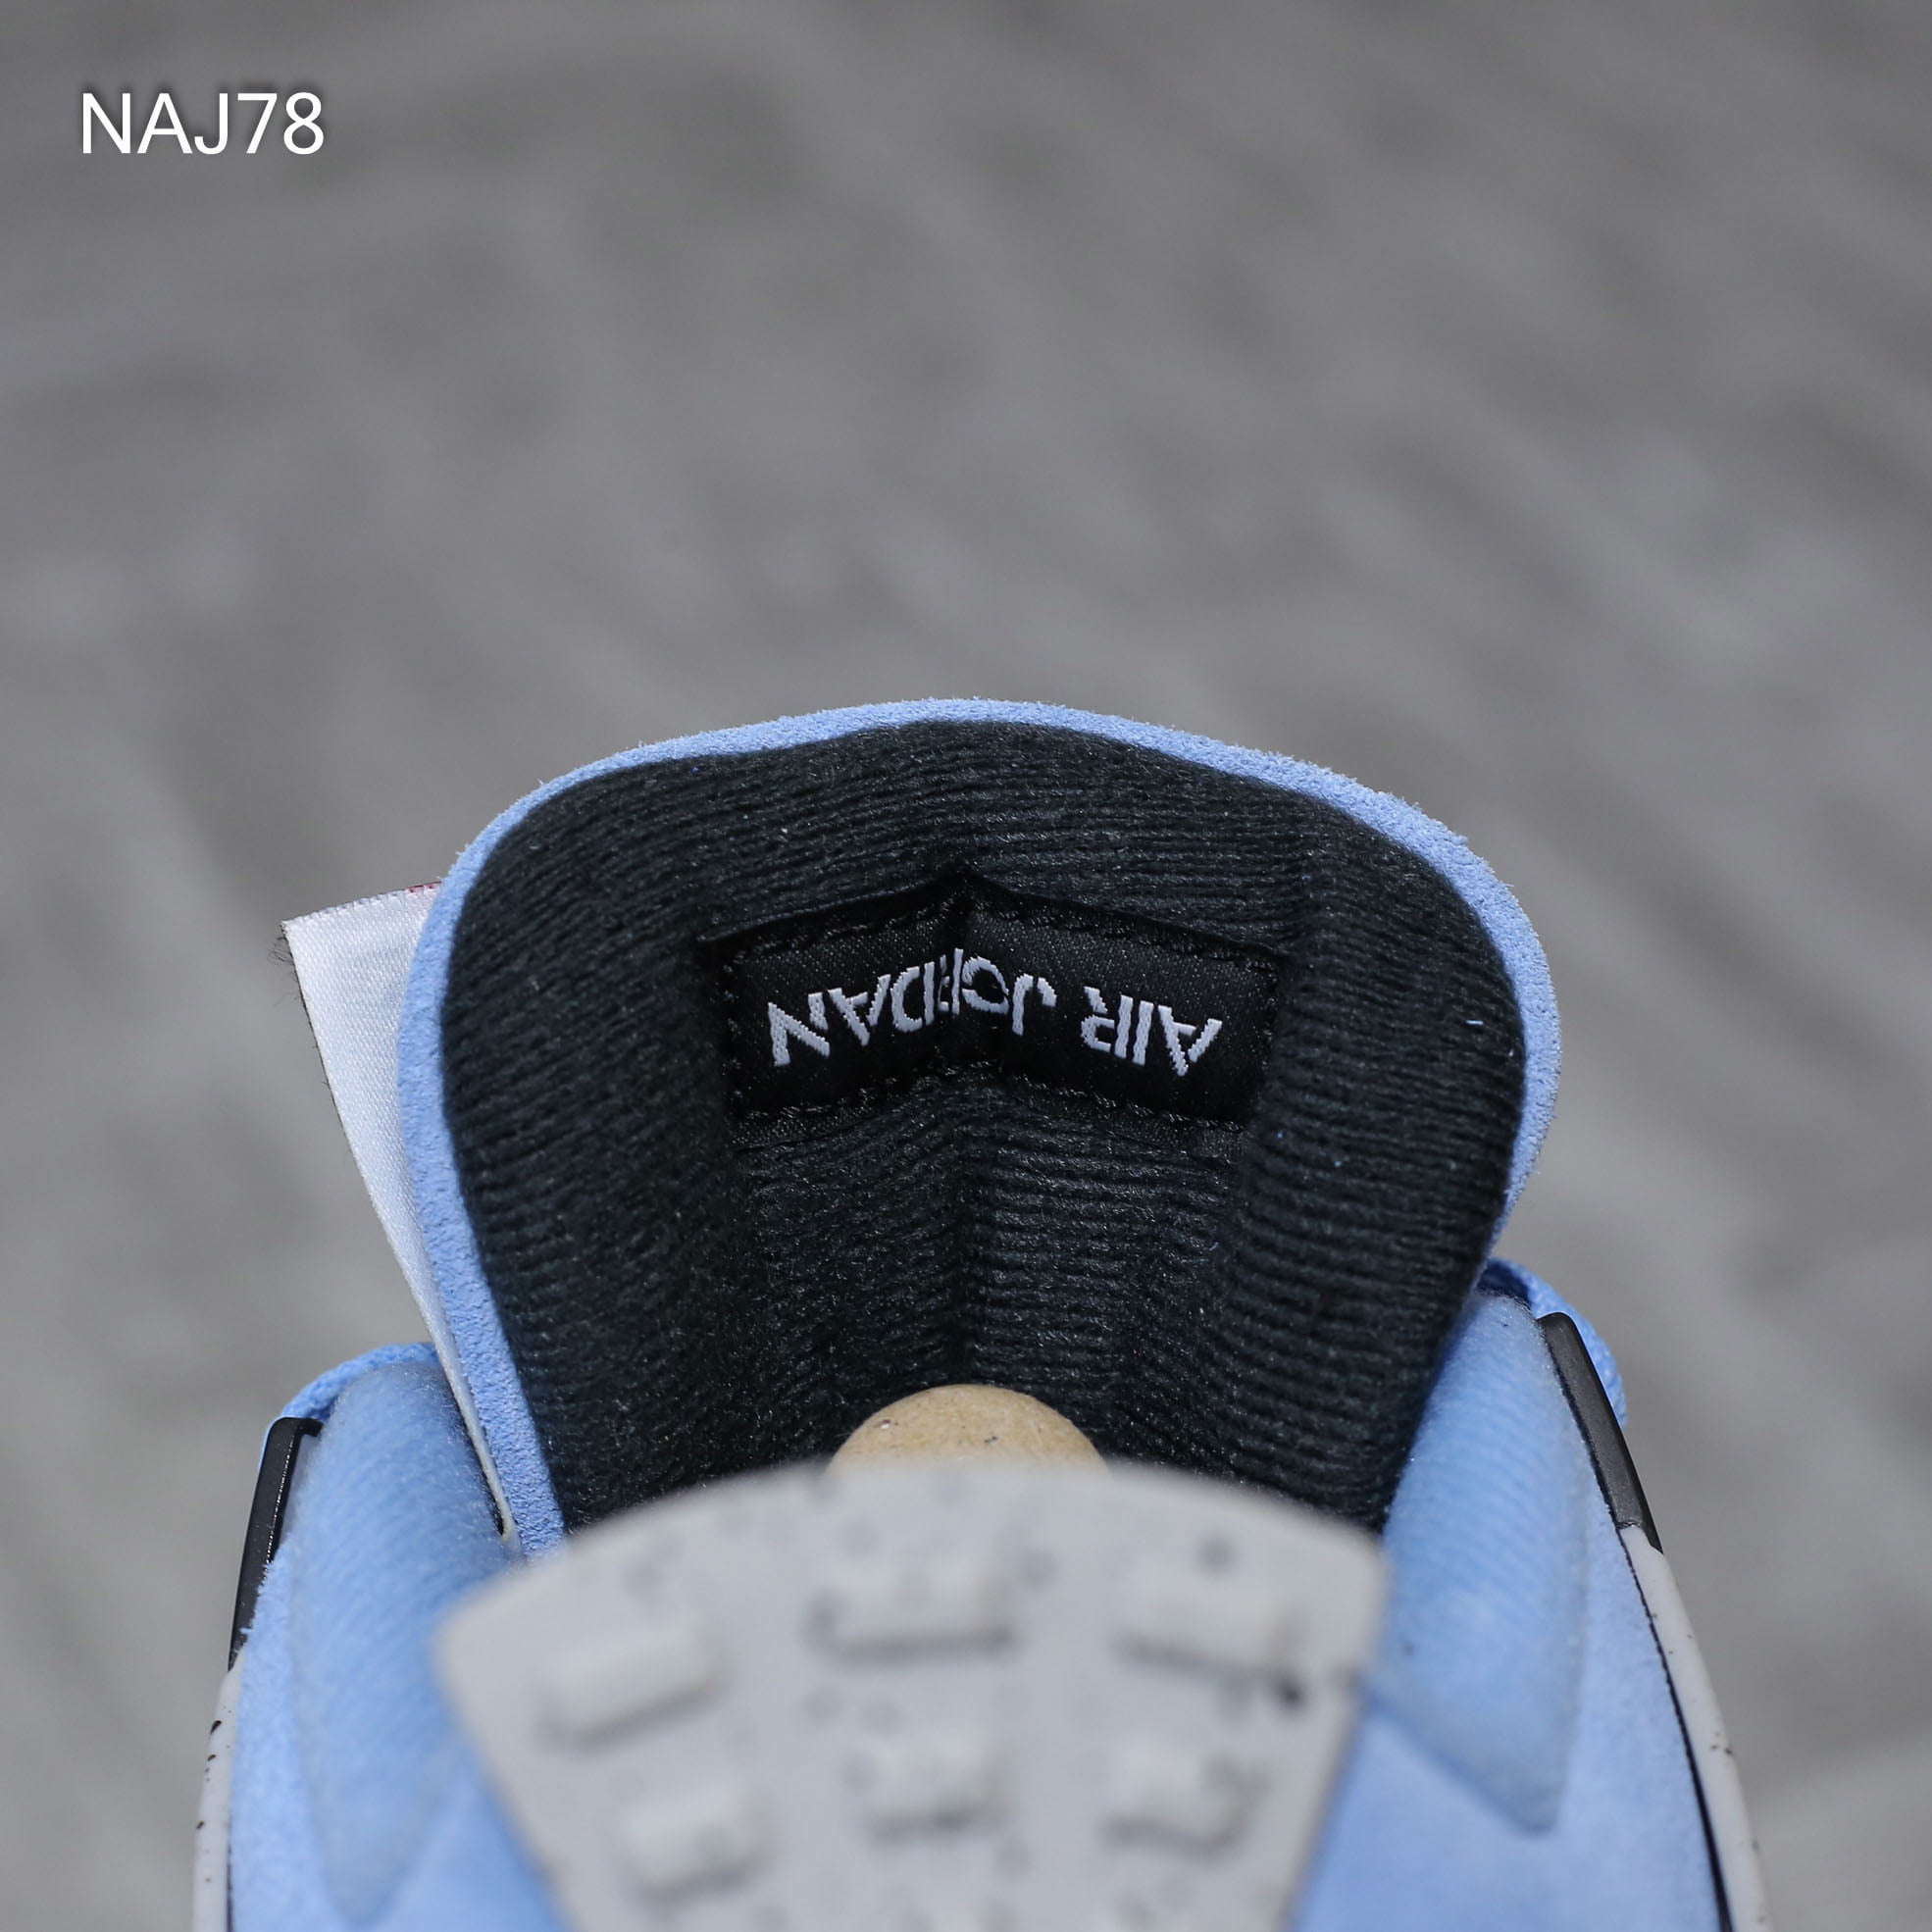 Nike Air Jordan 4 Retro ‘University Blue’